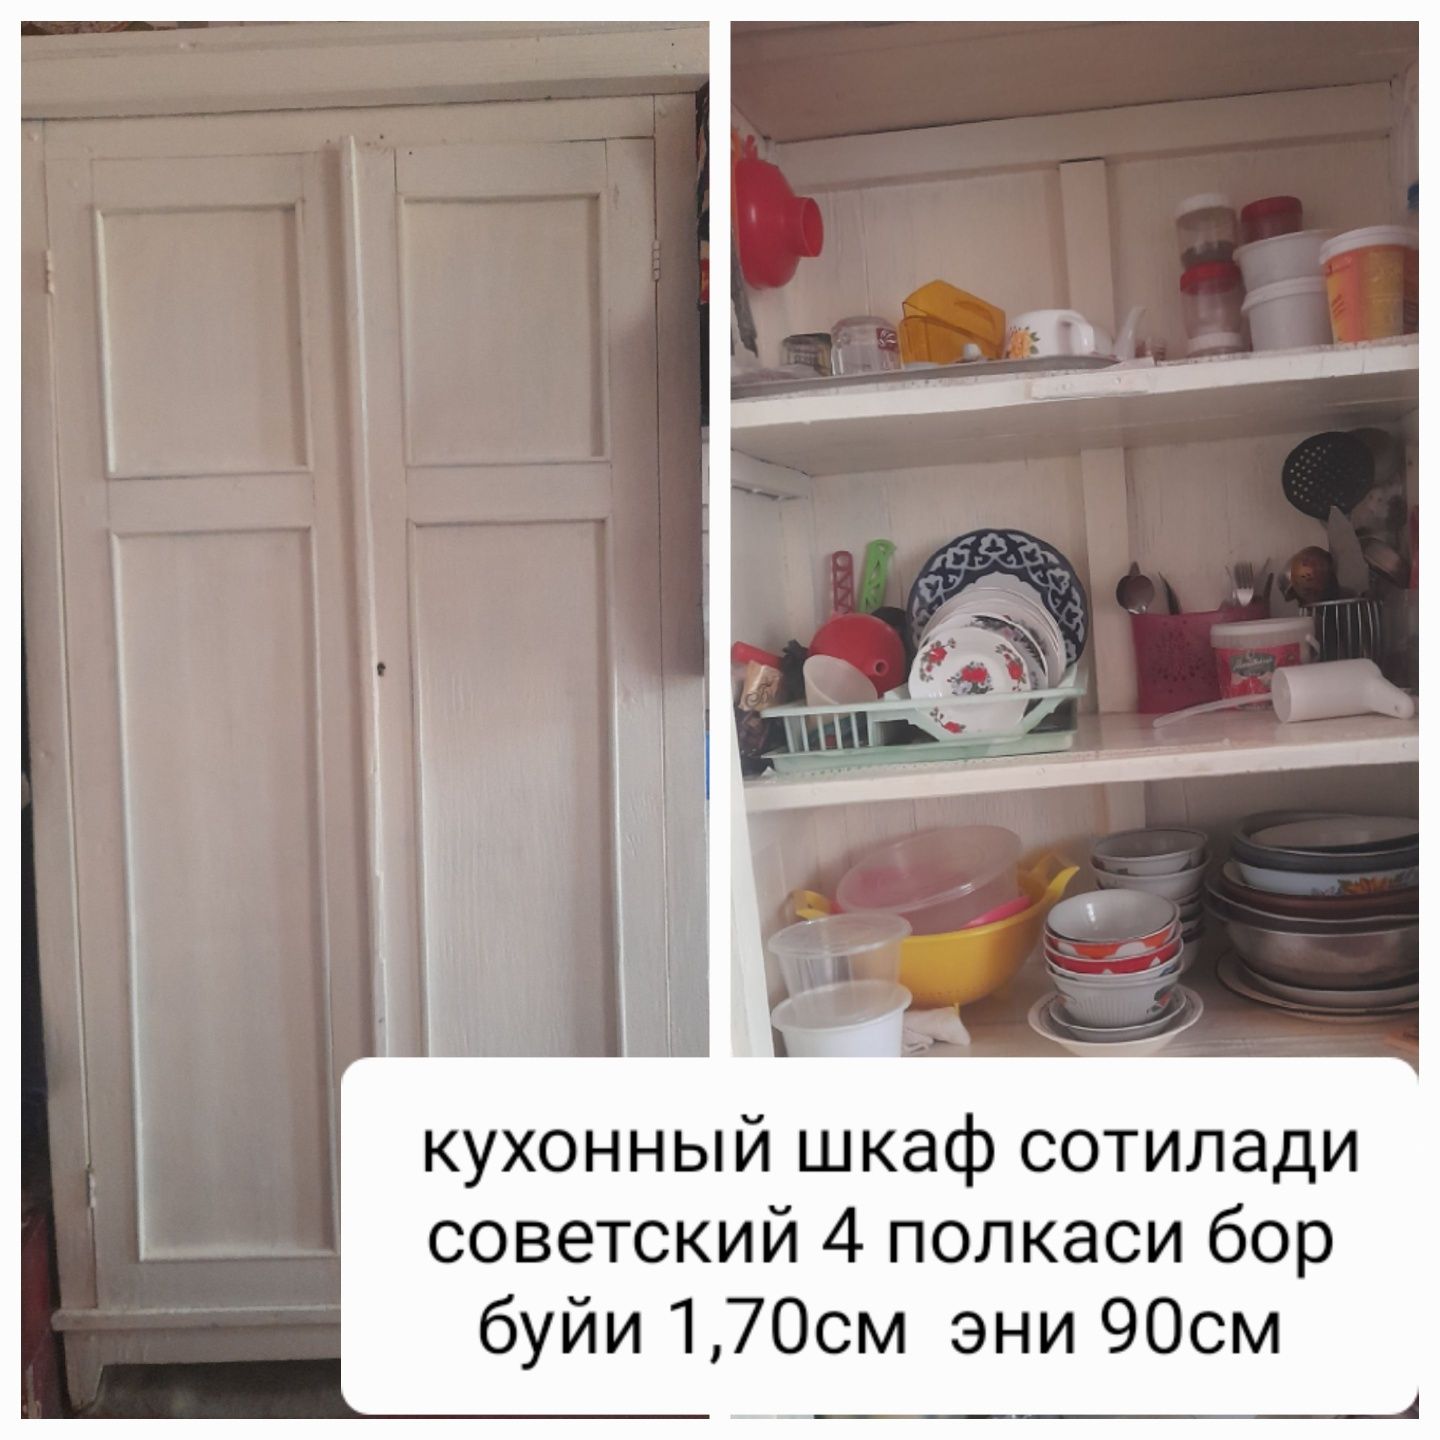 Кухонный шкаф советский бакуват тахтадан